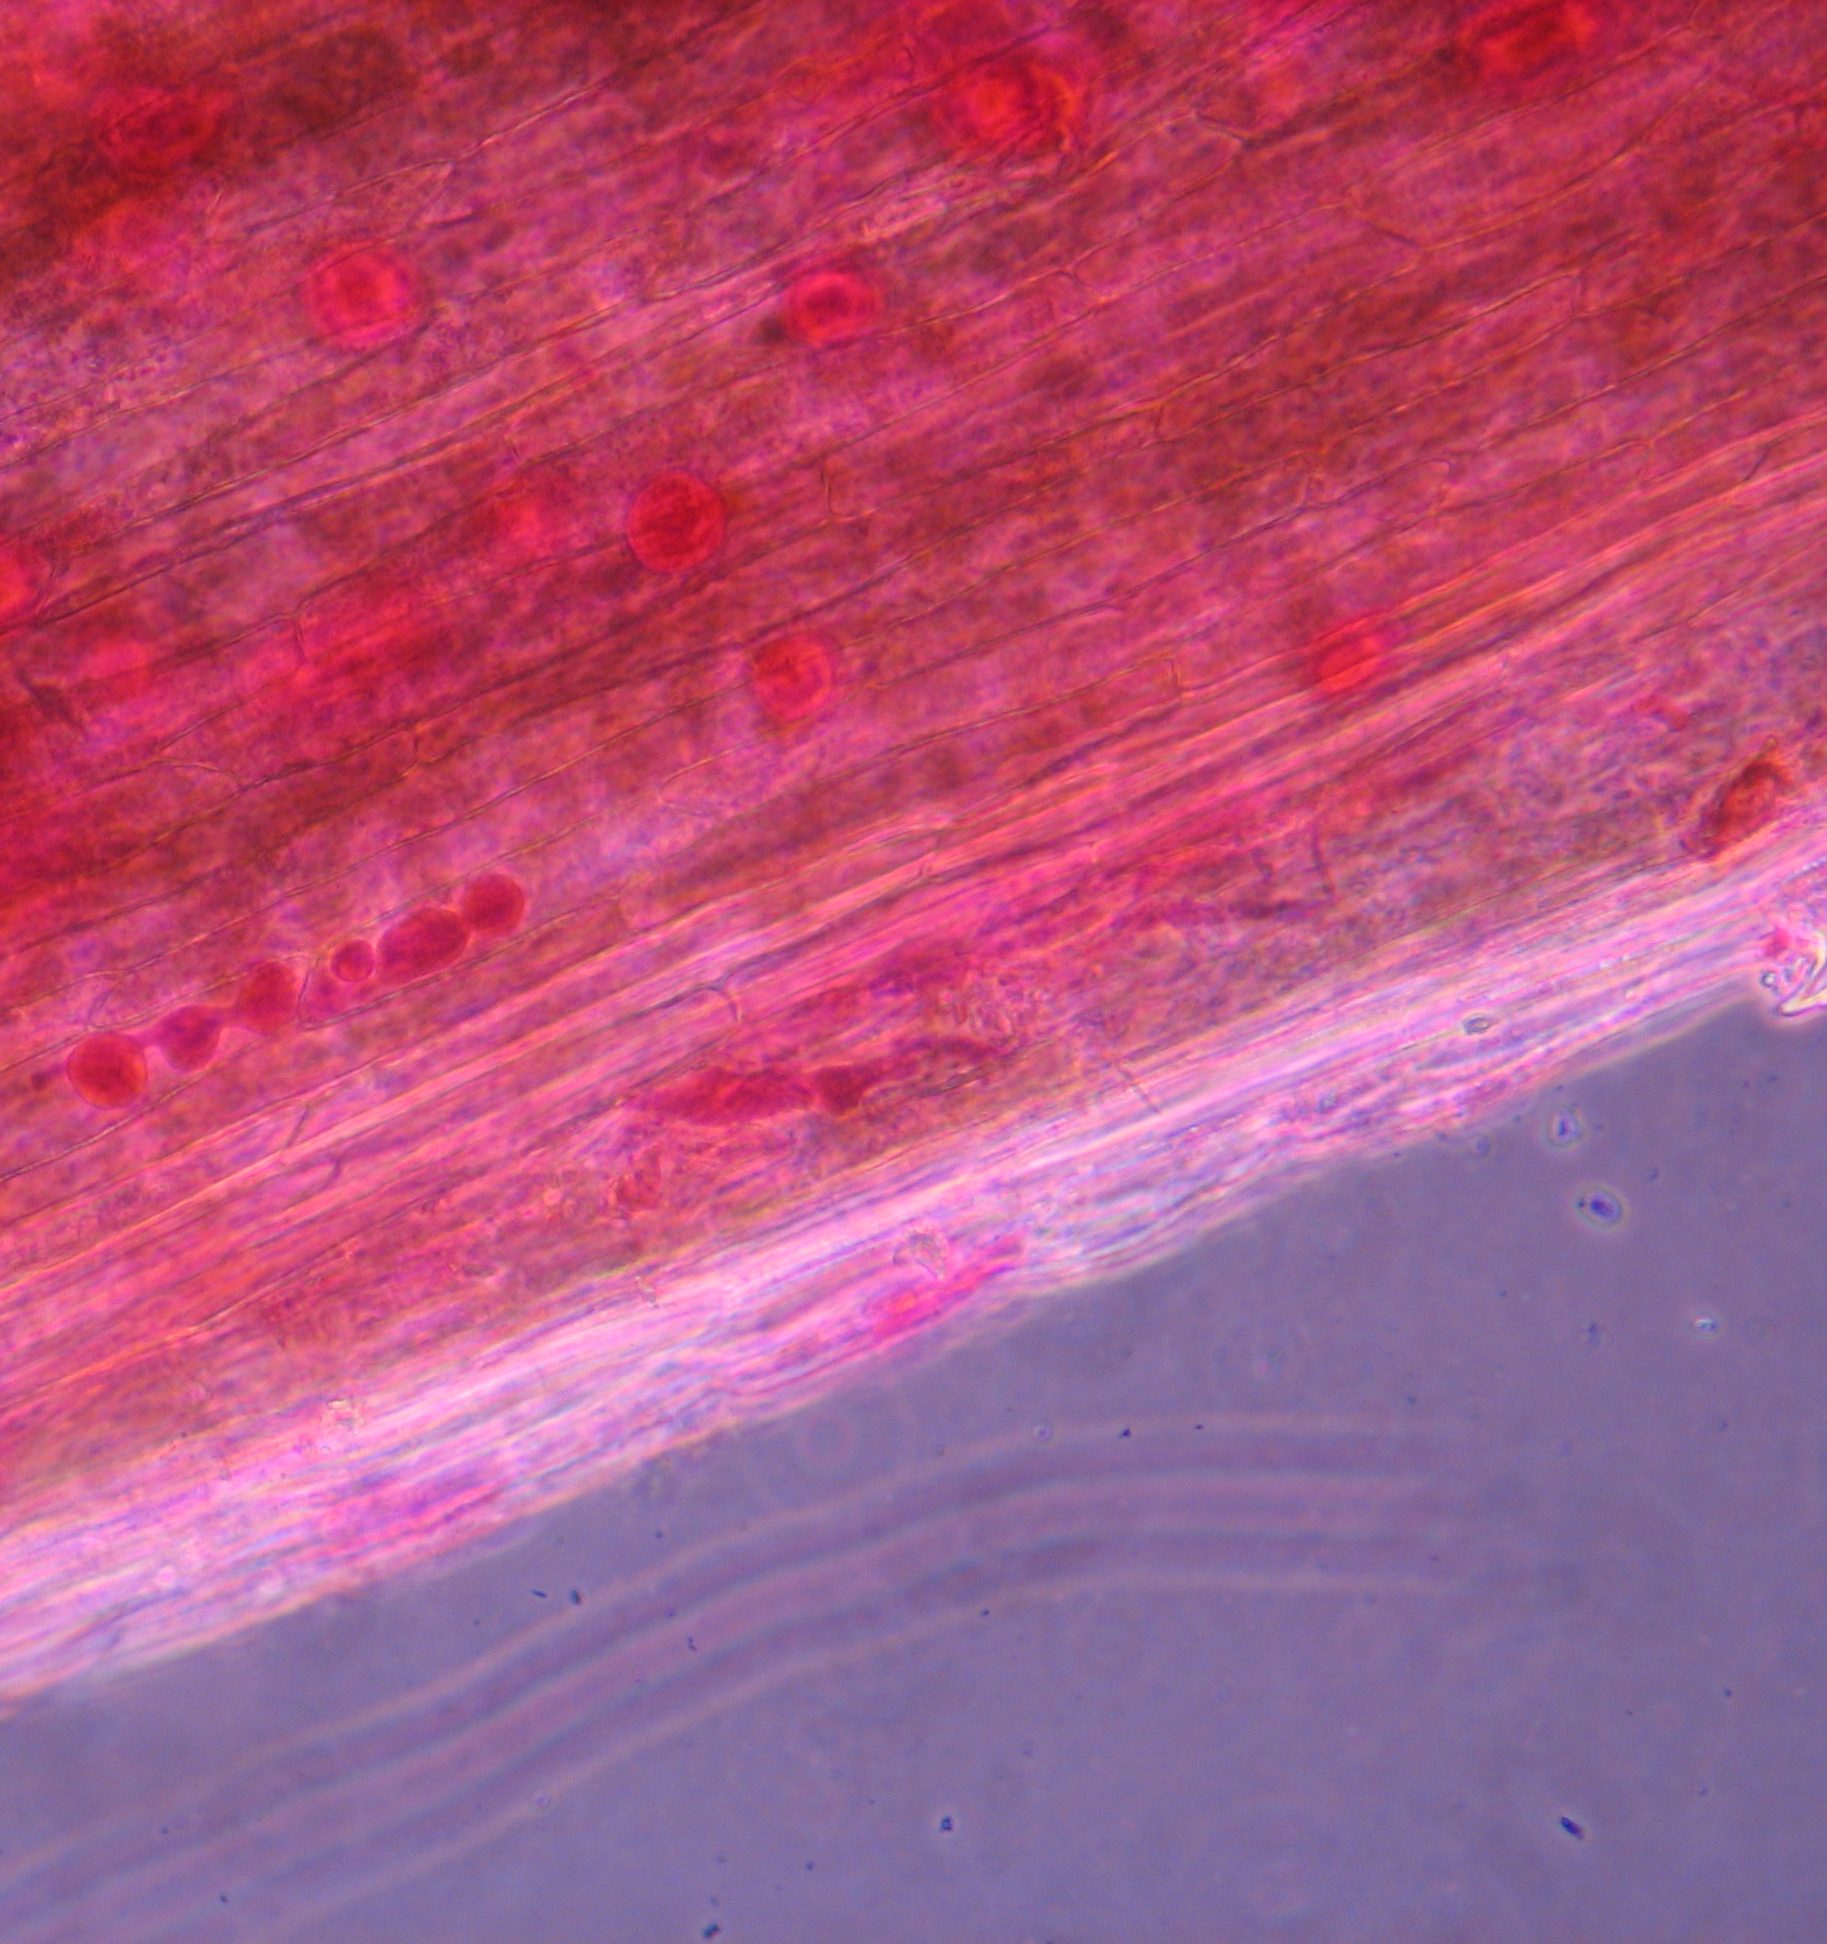 Bild 1. Oosporer av Pythium sp. insprängda i gräsets vävnad. Foto: Botaniska analysgruppen.